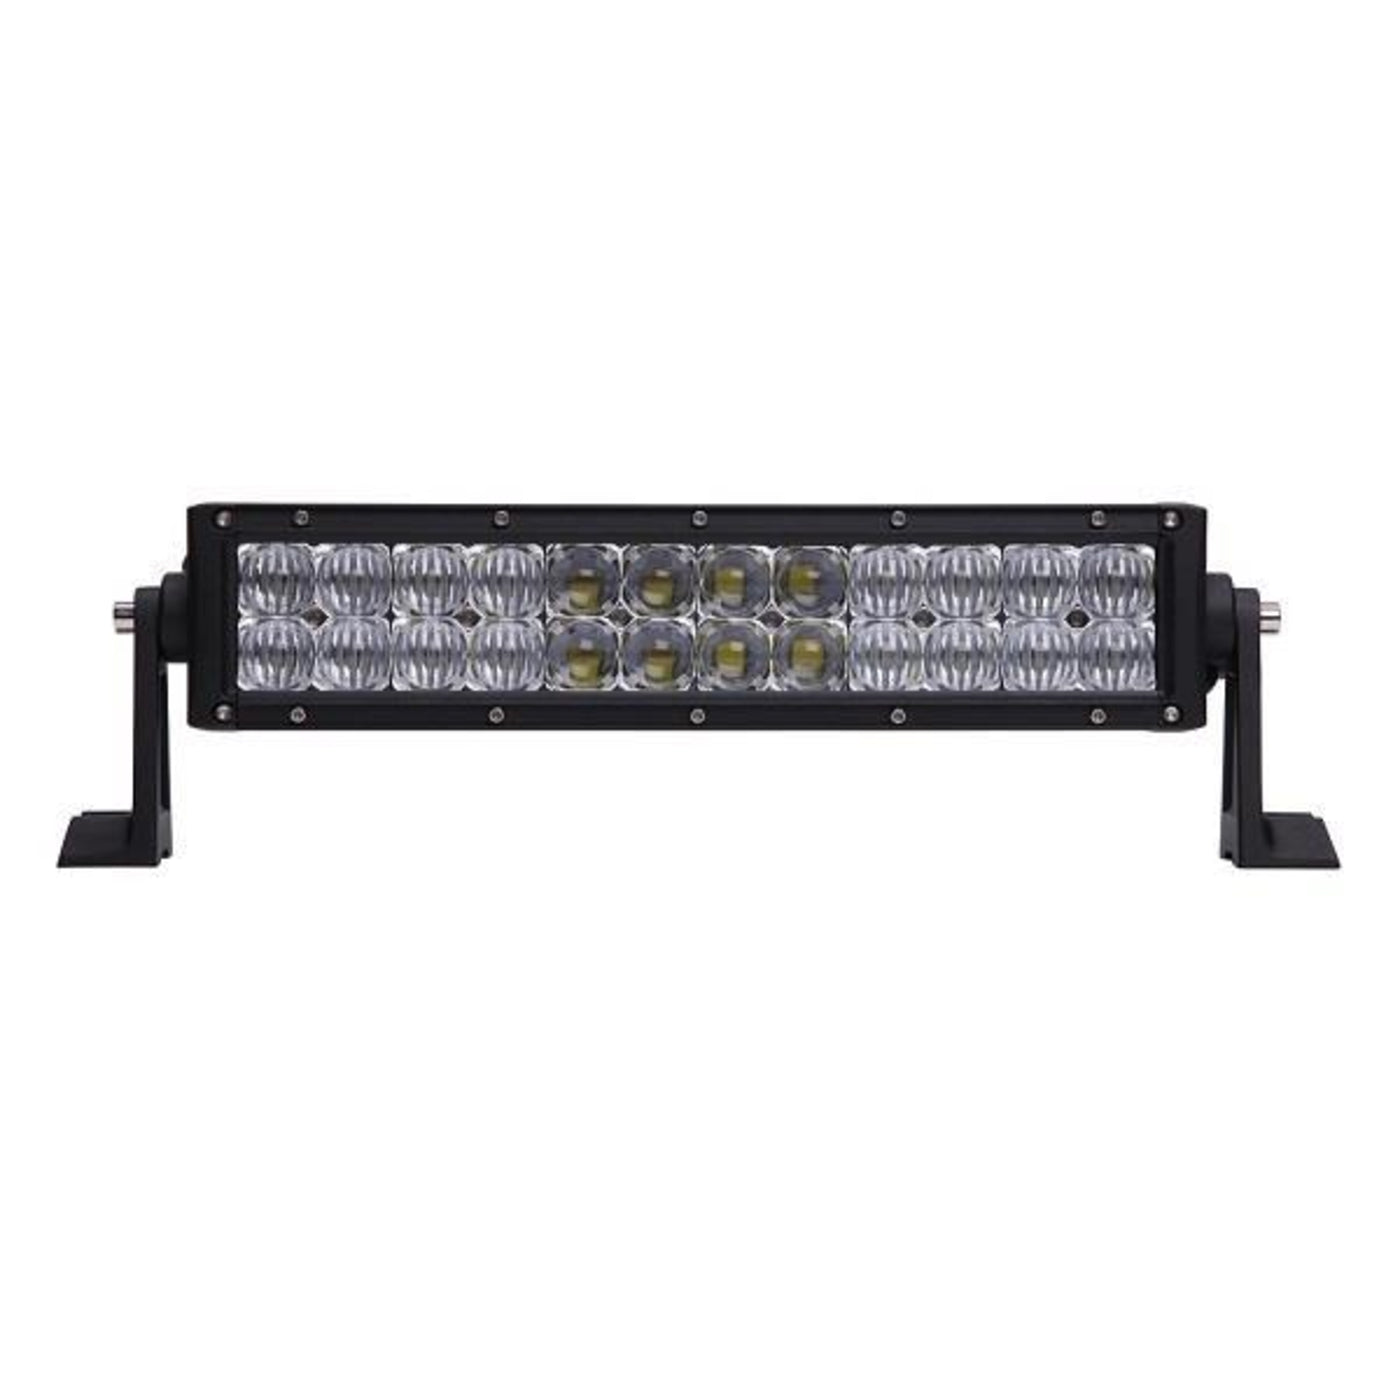 GTW® 13.5" Double Row LED Light Bar